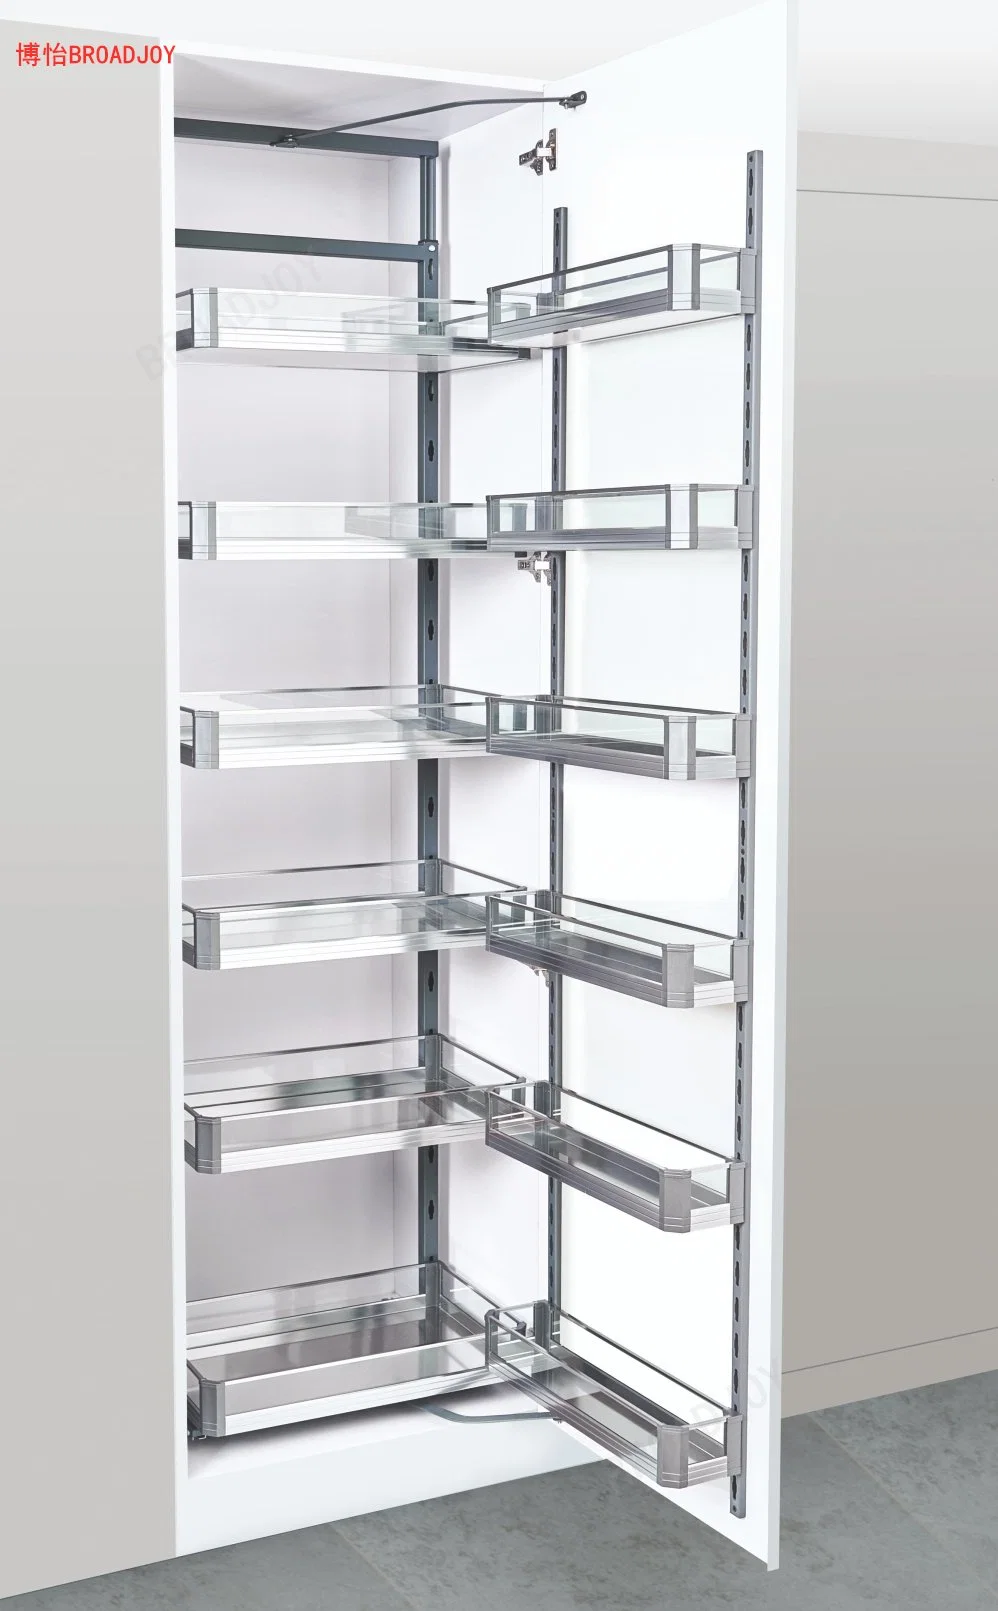 Mehrschichtige Aluminium- und Glaspantry-Einheiten Lagerung Rack Küchenschrank Zubehör Kleinteile Snacks Getränke und Getränke Lagerung Regal